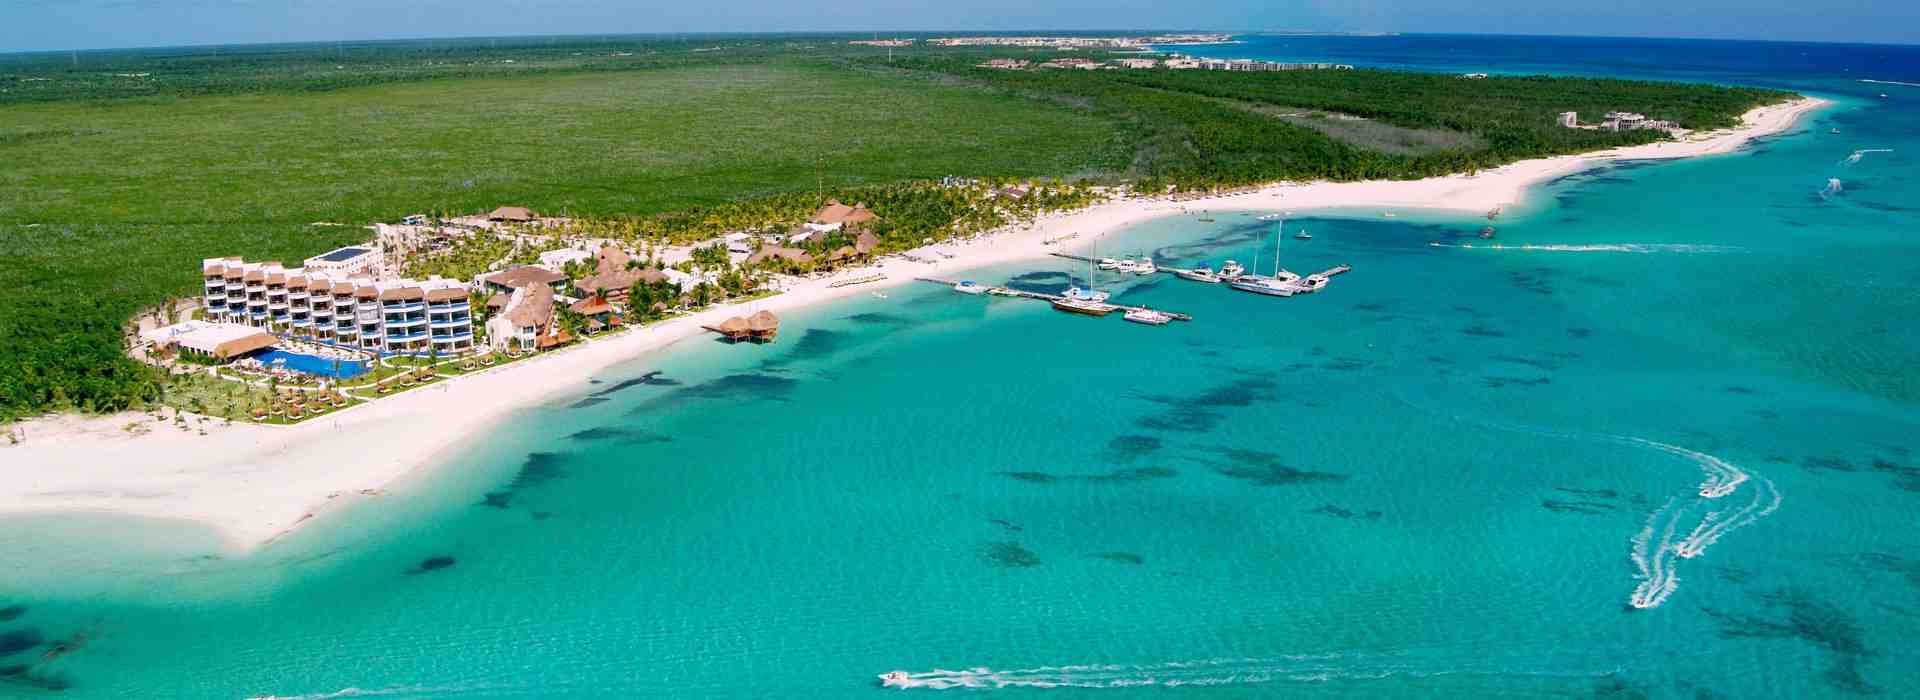 ¿Cuáles son las fechas más baratas para viajar a Cancun?